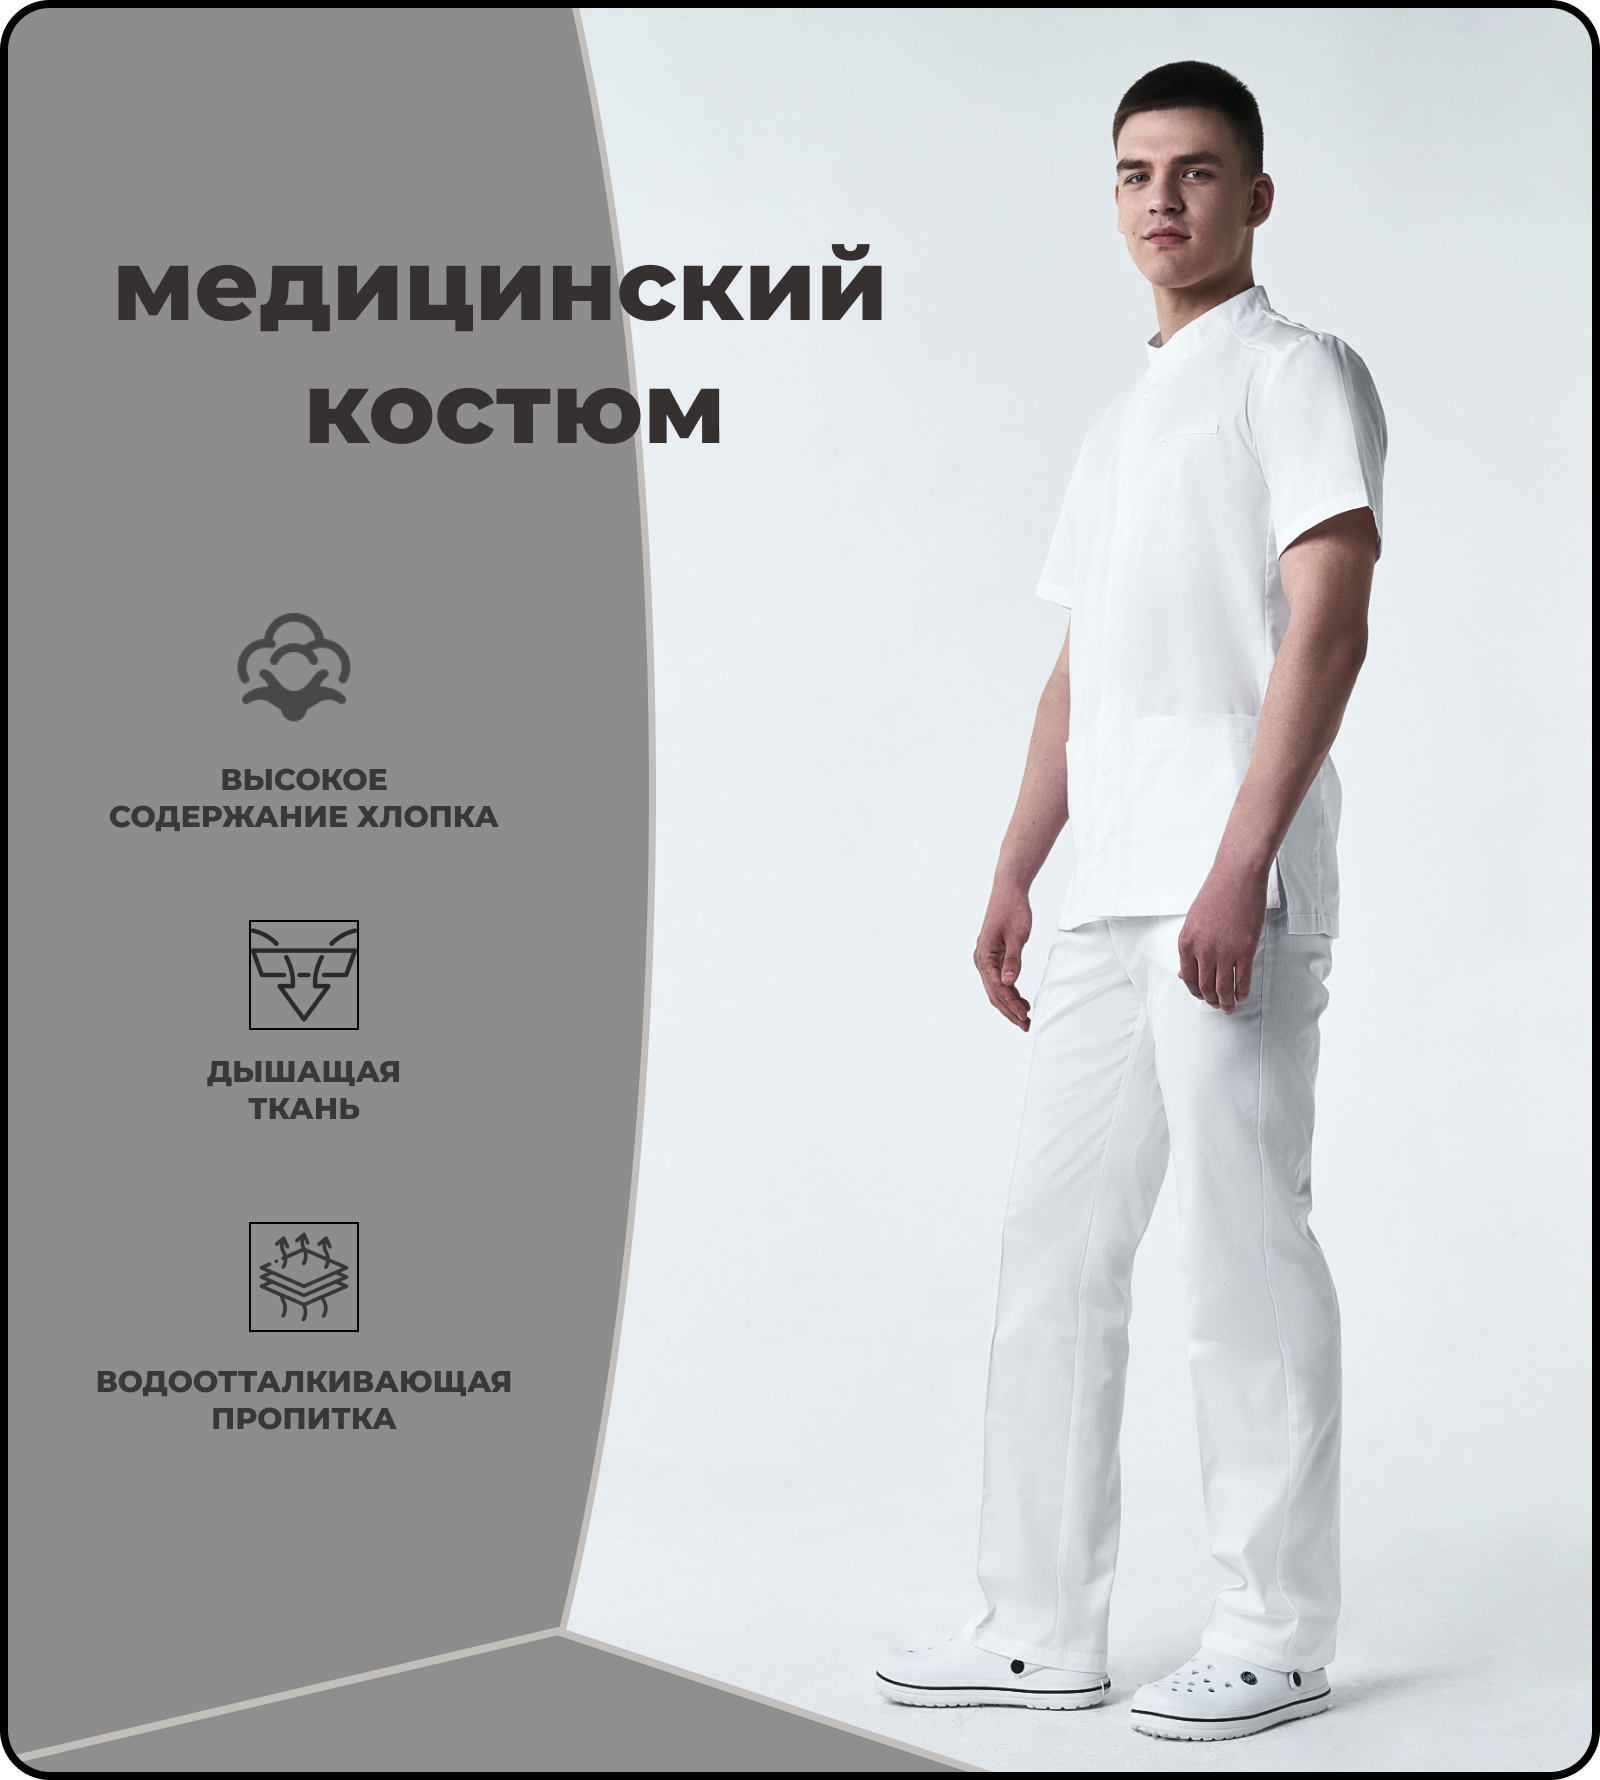 Костюм медицинский мужской белый куртка брюки размер 50 медицинская одежда спецодежда